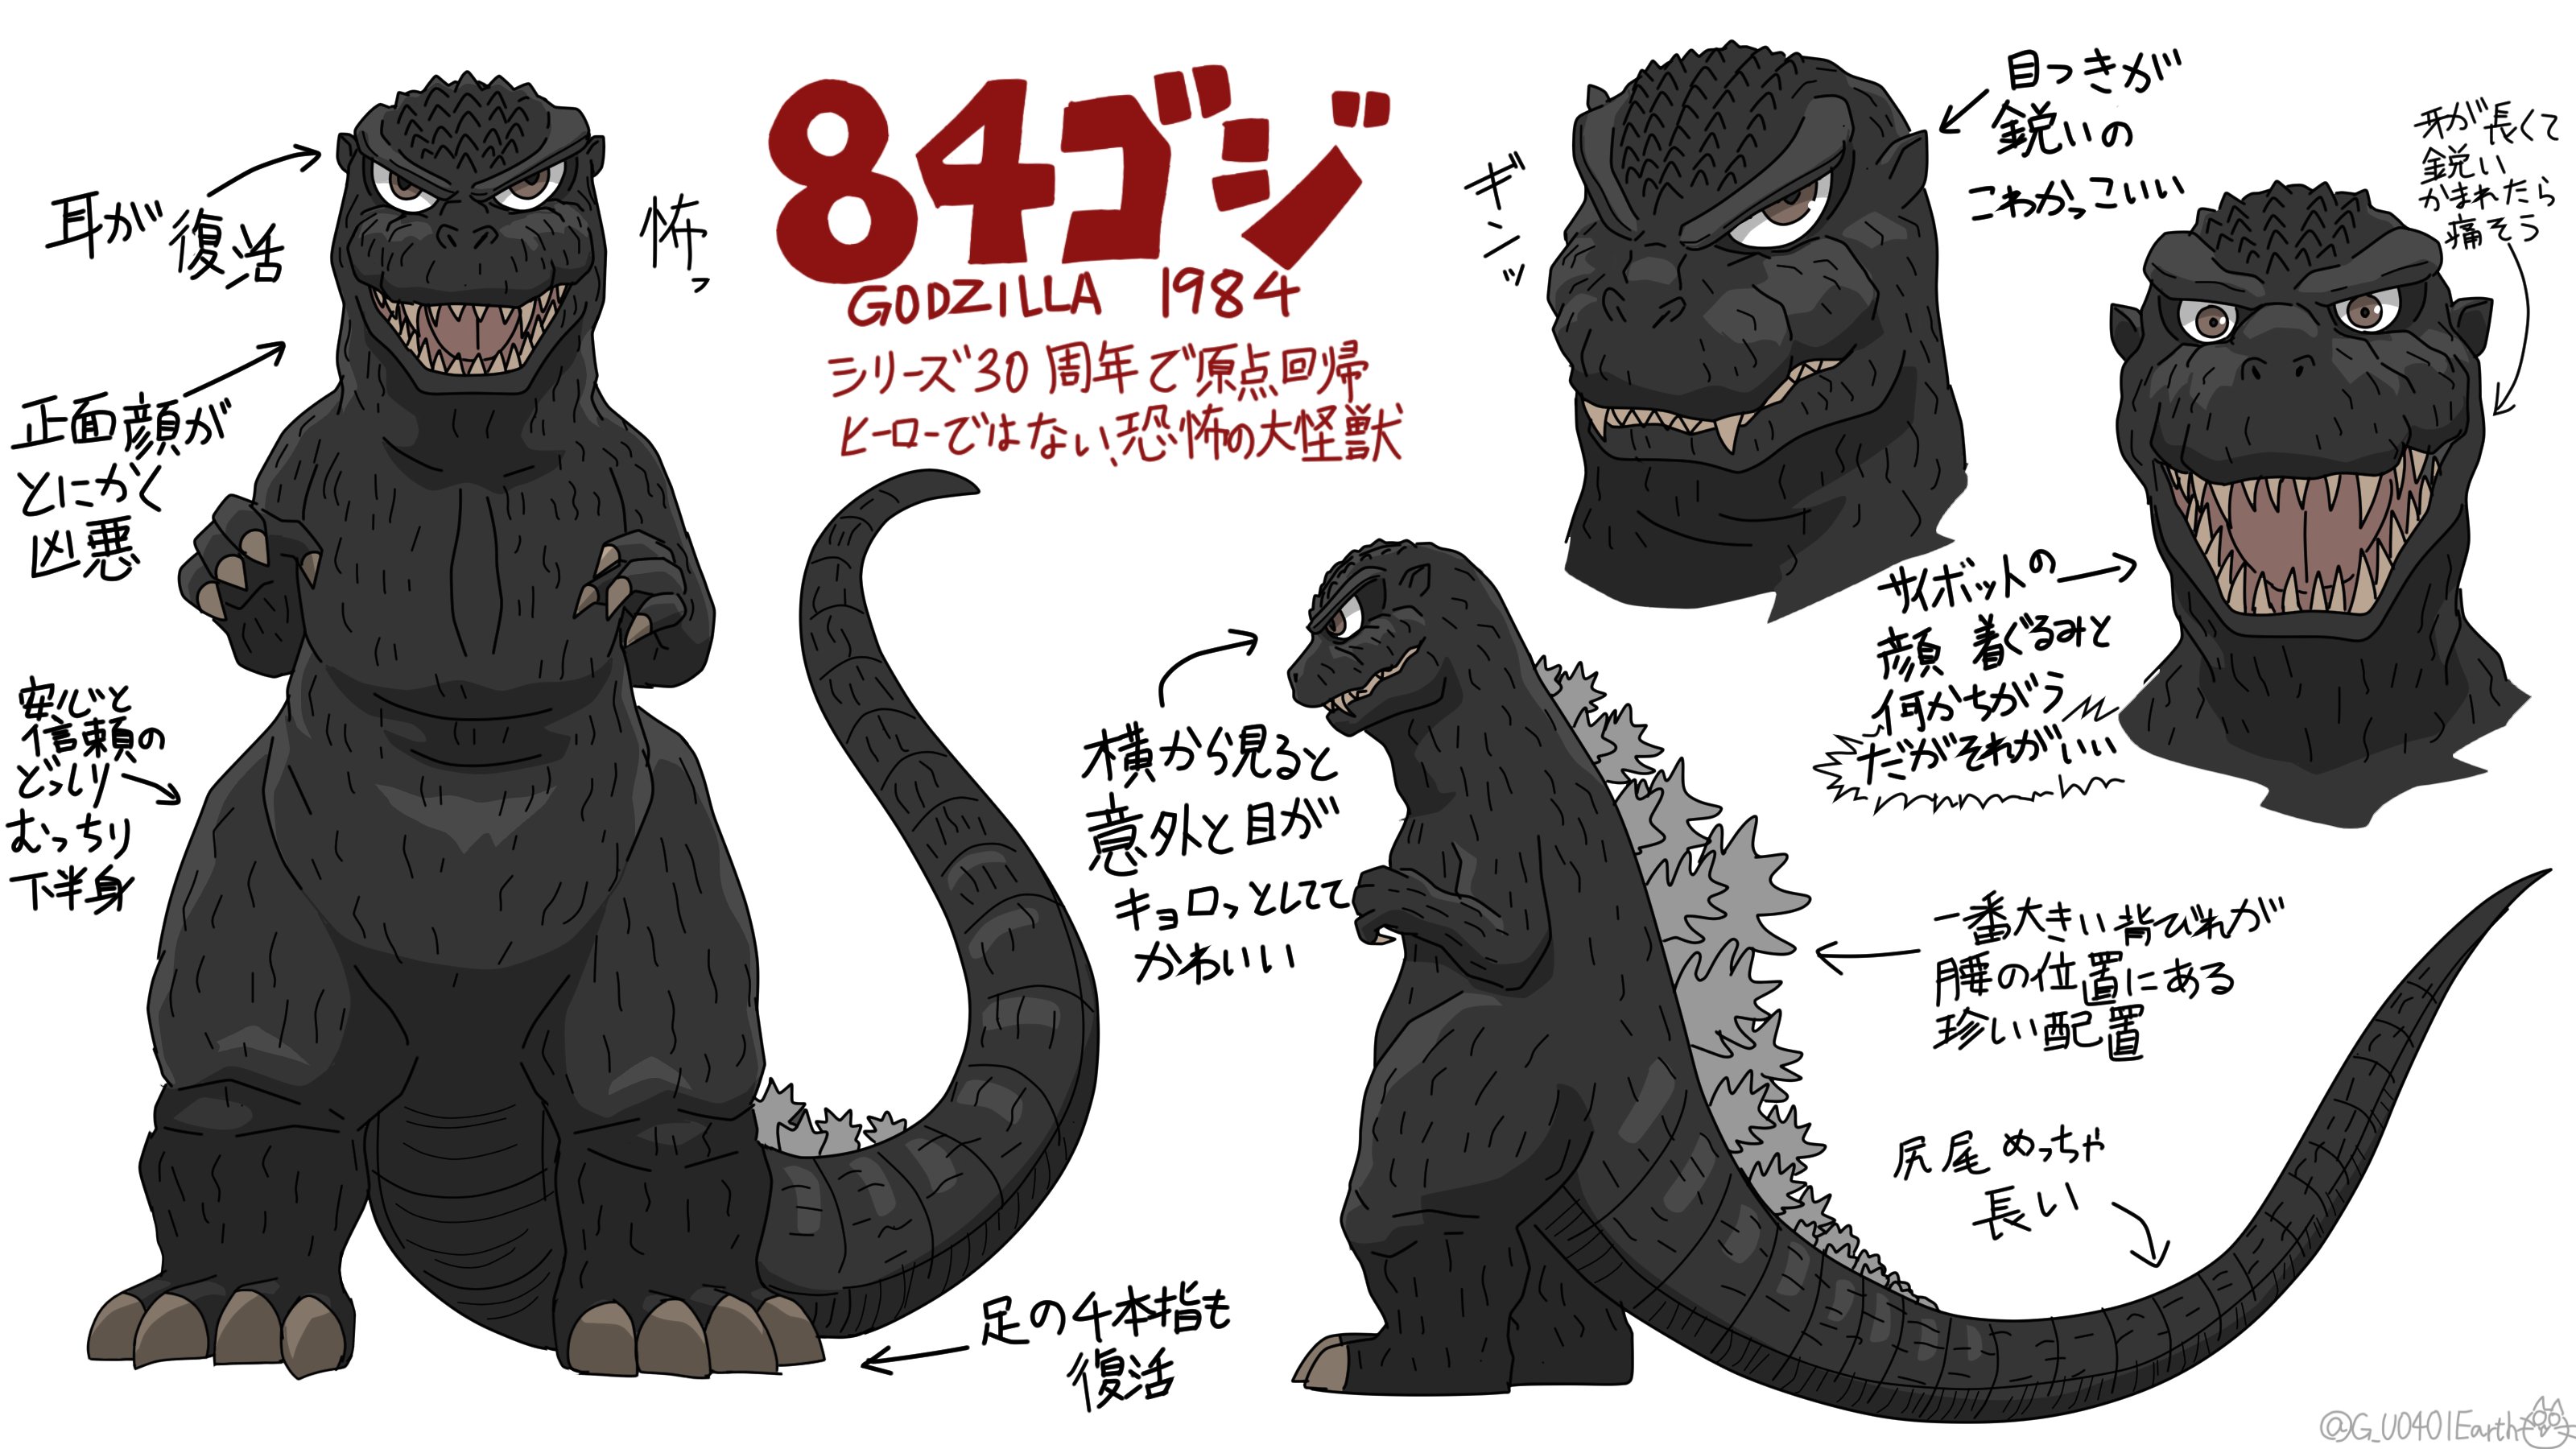 猫怪獣ノラ 84ゴジの デフォルメイラスト練習 ゴジラ Godzilla T Co Lcdr7nbcwt Twitter